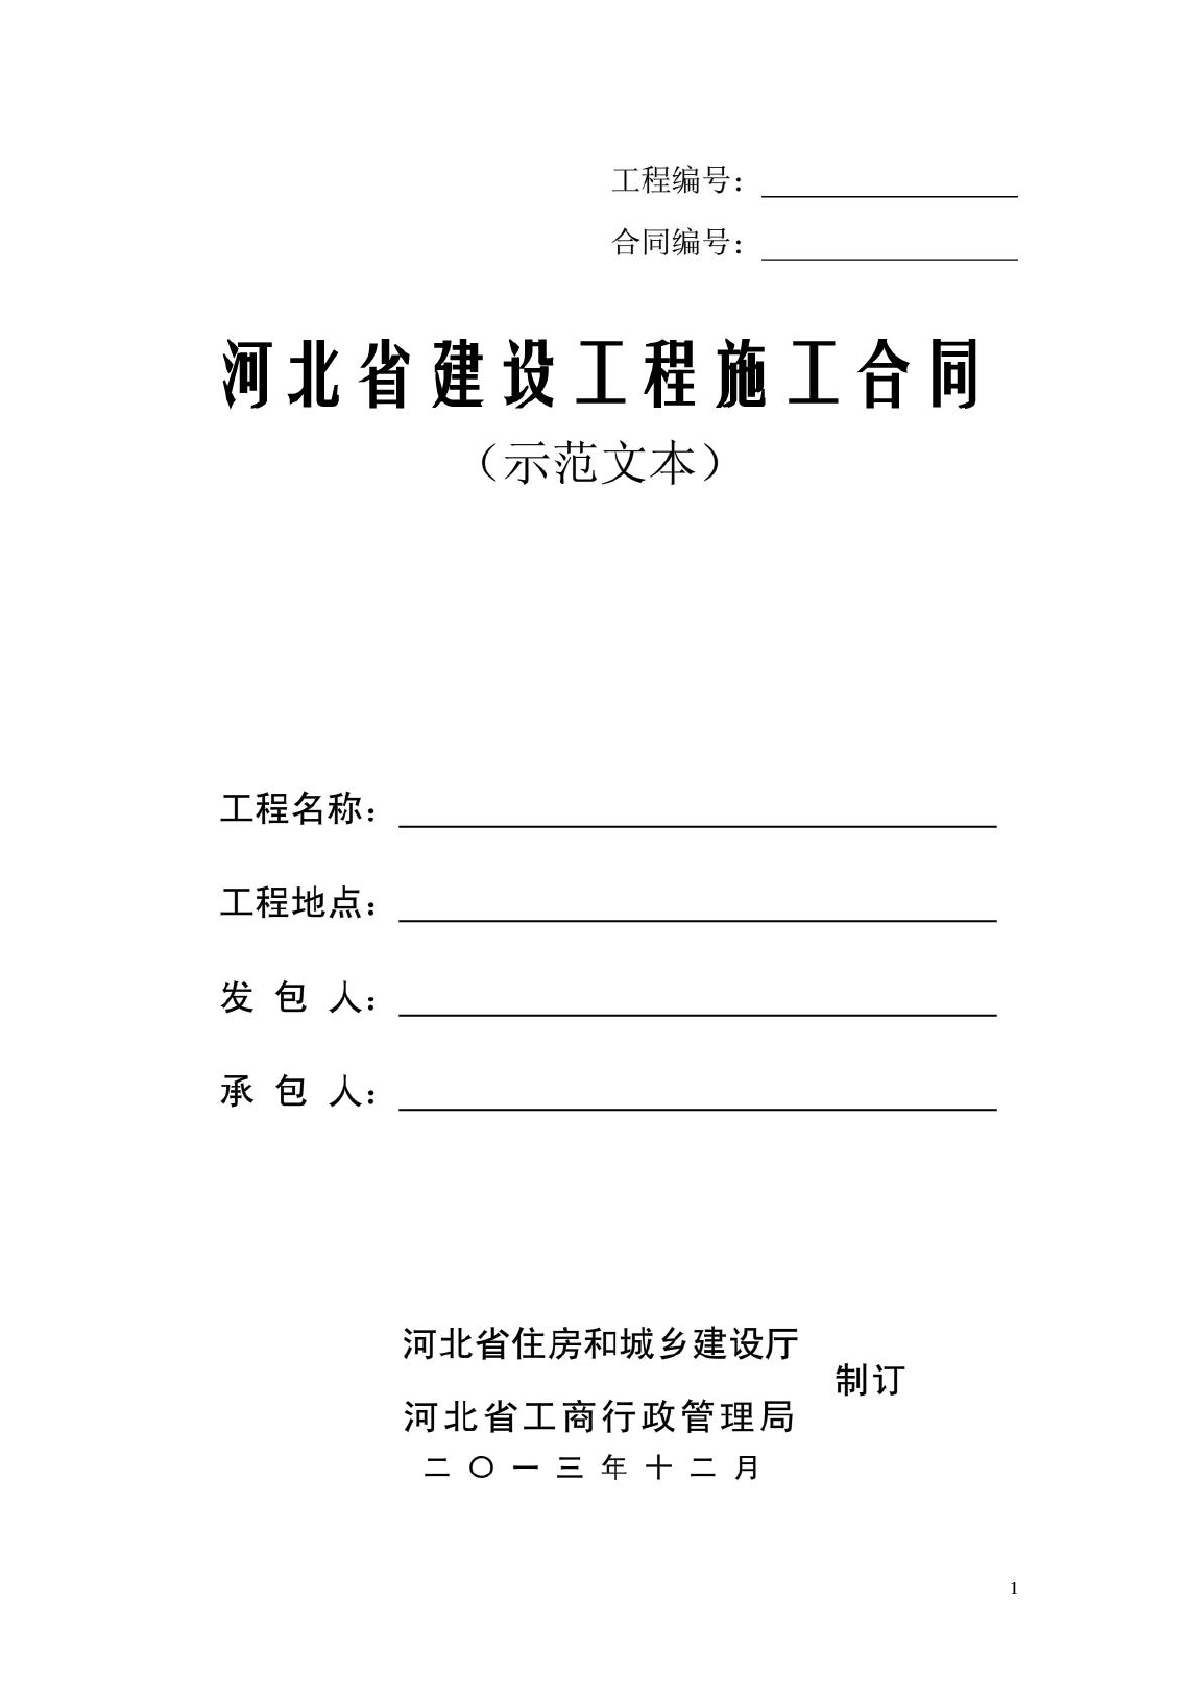 河北省建设工程施工合同2013版——2013年12月2日发布施行